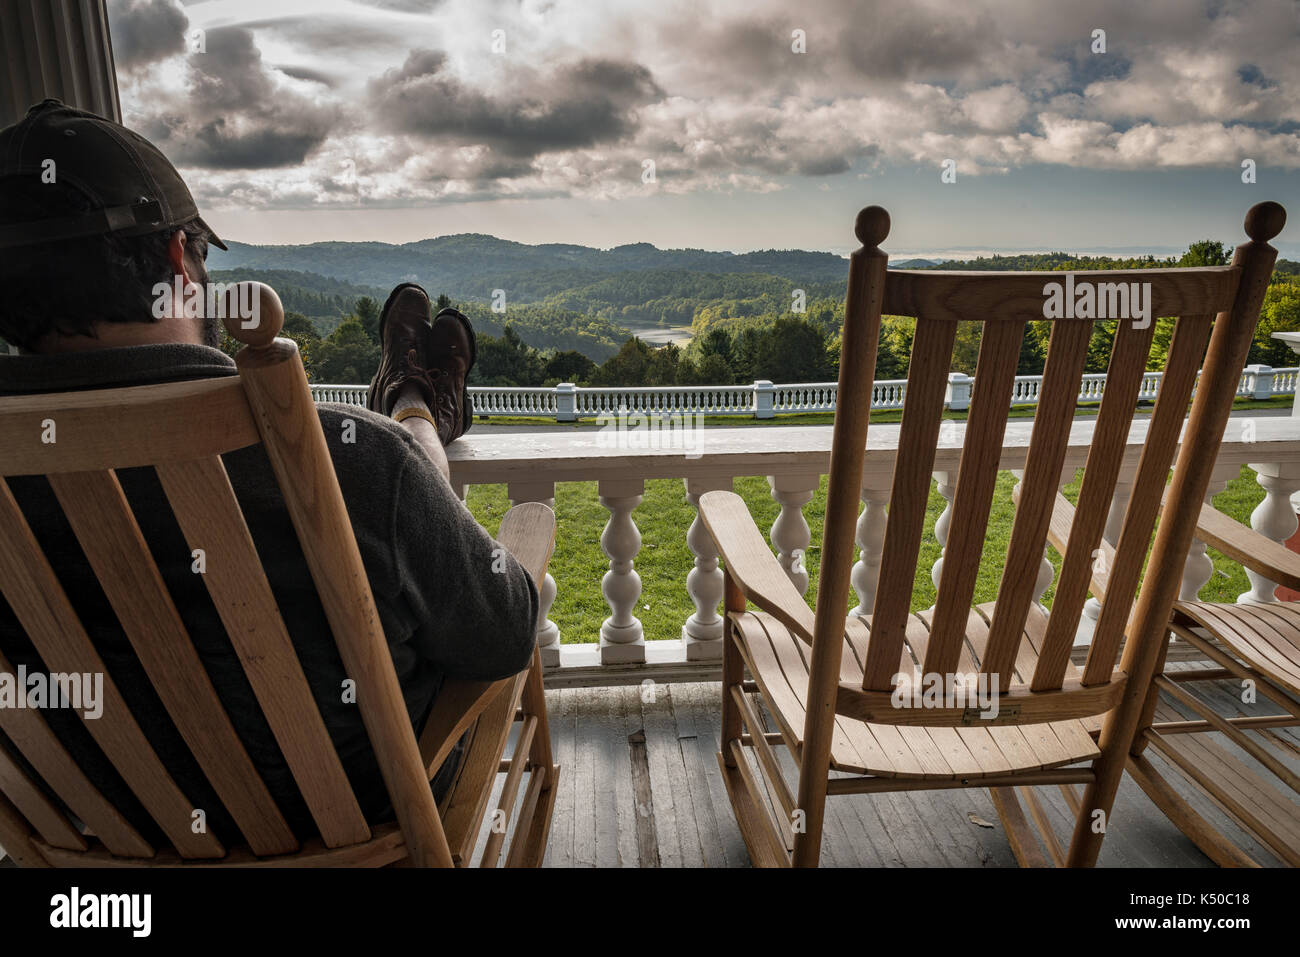 Füße hochlegen Relaxen Schaukelstuhl Veranda - Fantastische Aussicht, Wolken. Südlichen Berg Leben. Holz- Wippe, auf der Veranda mit Blick auf den See Stockfoto